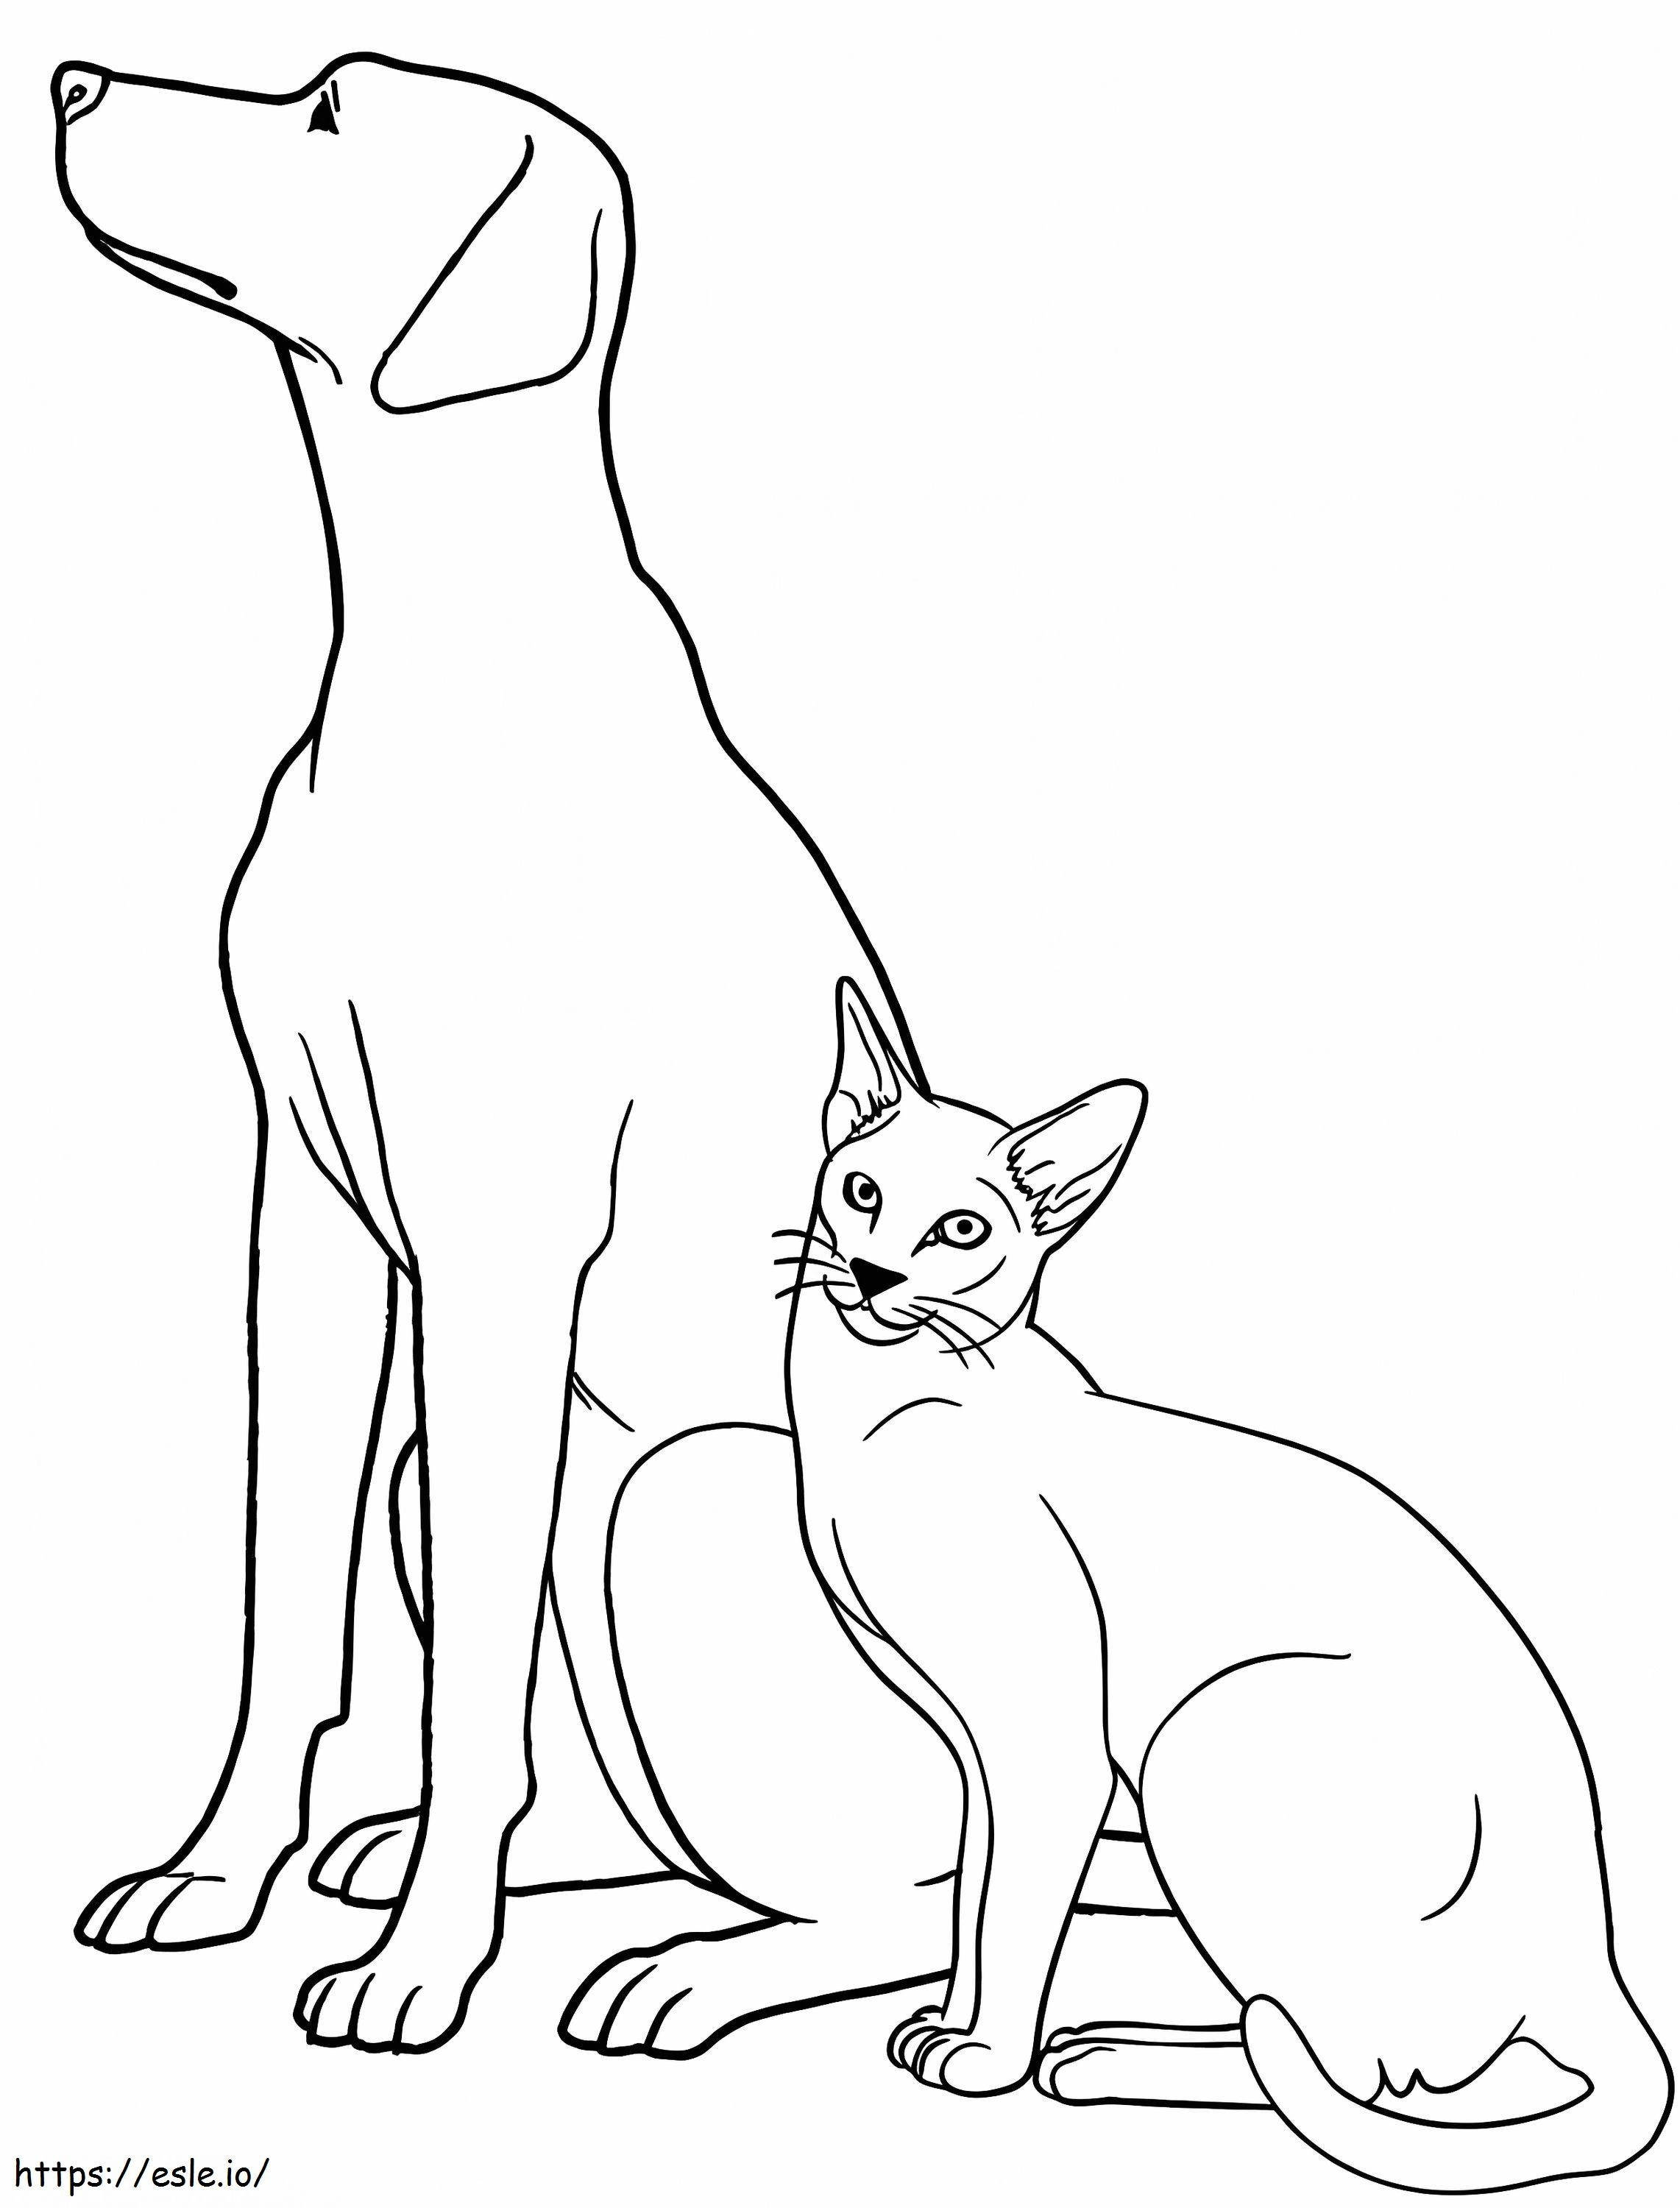 Cane e gatto per bambini da colorare